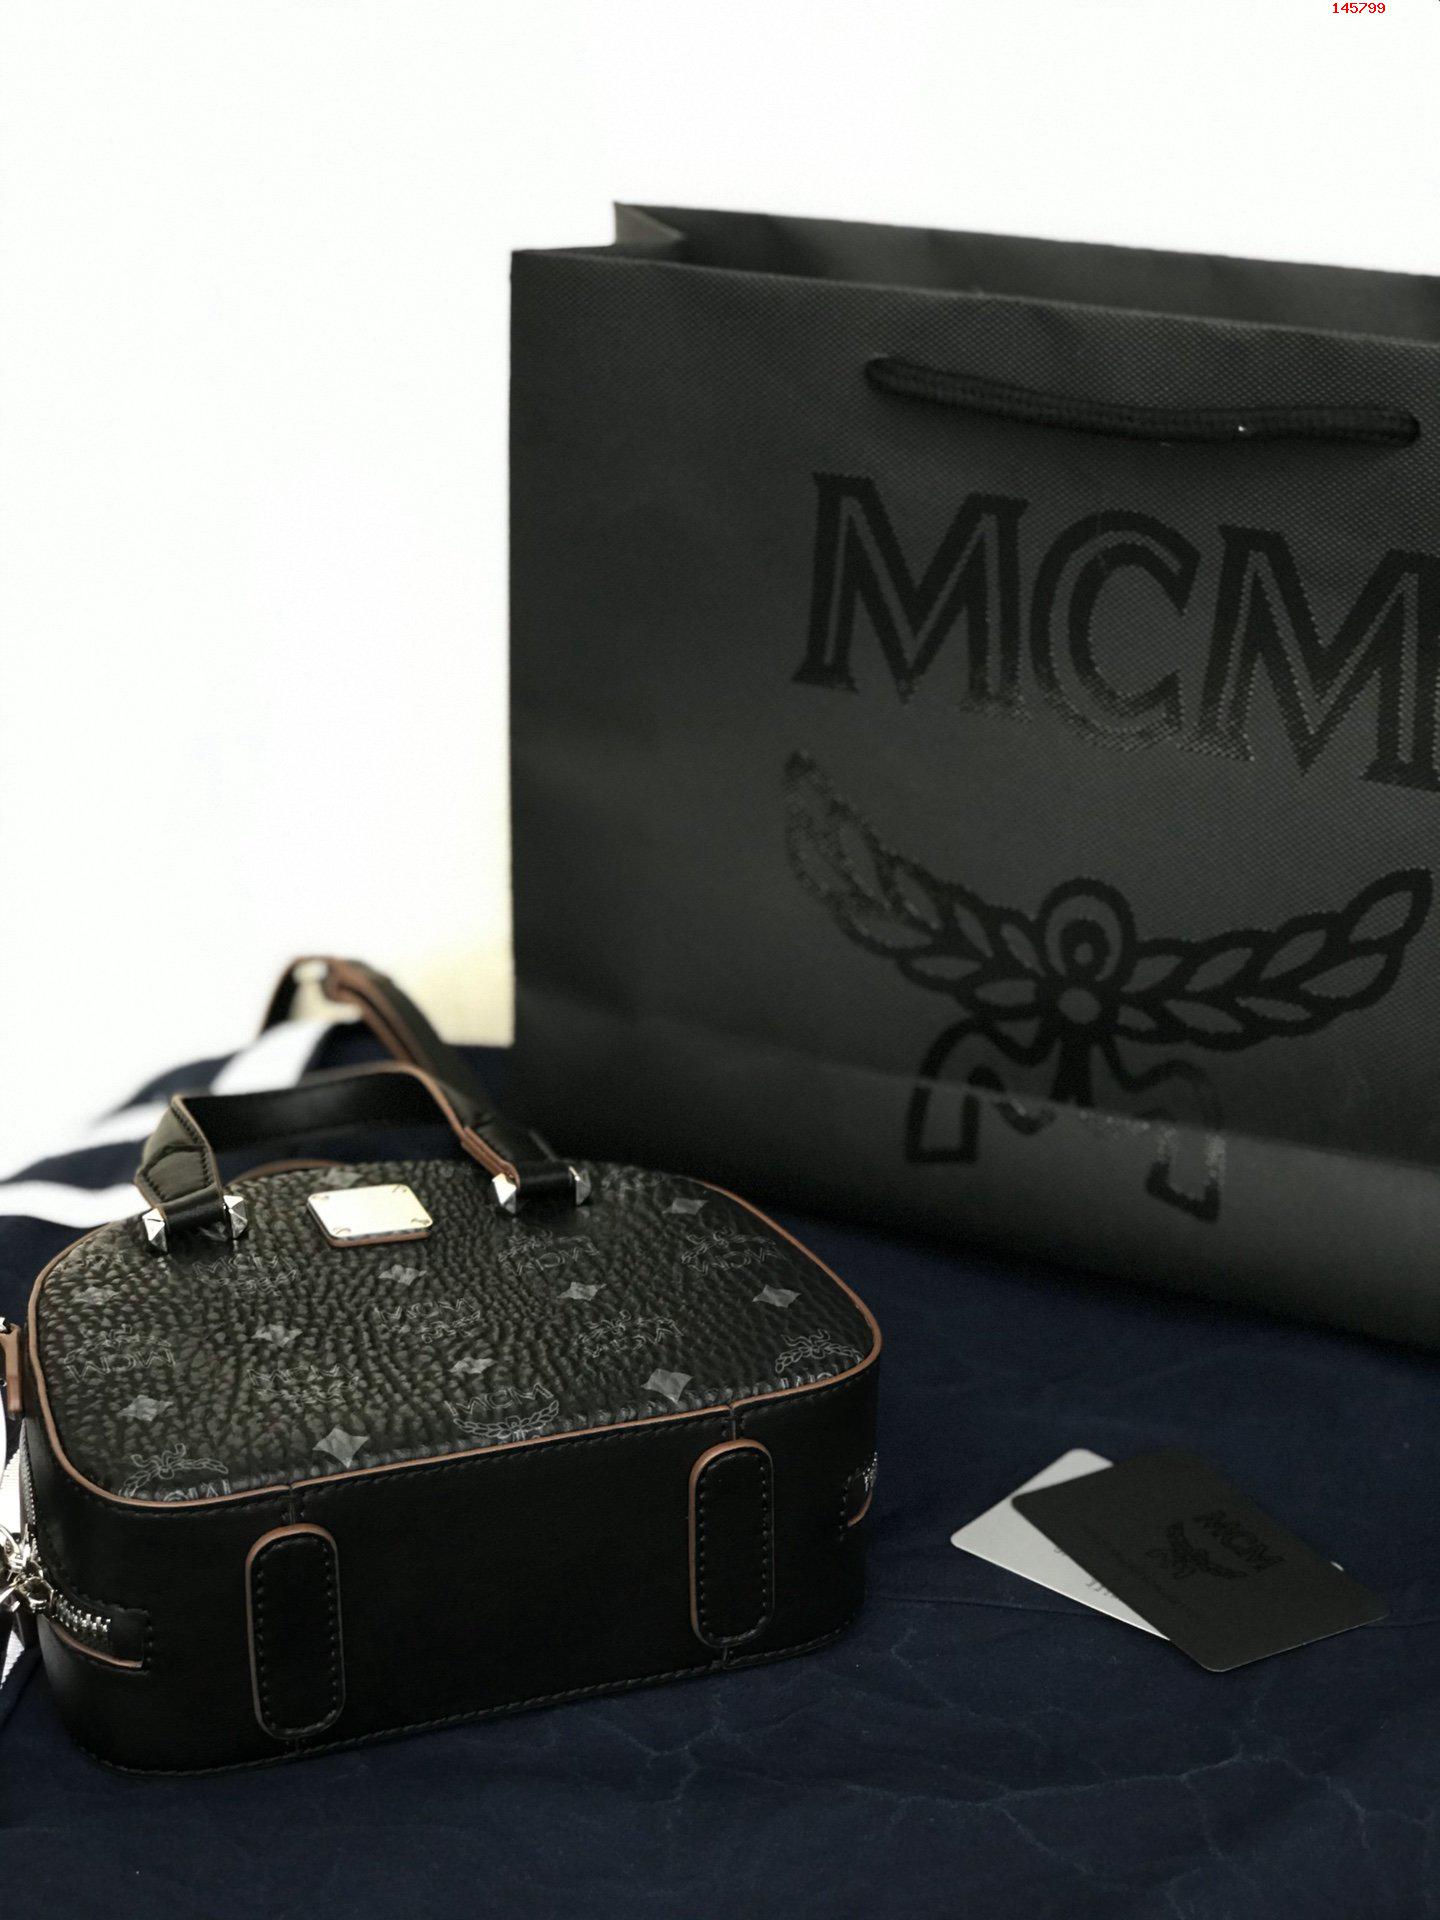 新款半月形手提包可以将其作为手提包使用 高仿MCM包包 精仿MCM女包 原版MCM女包 A货MCM女包 原单MCM女包 